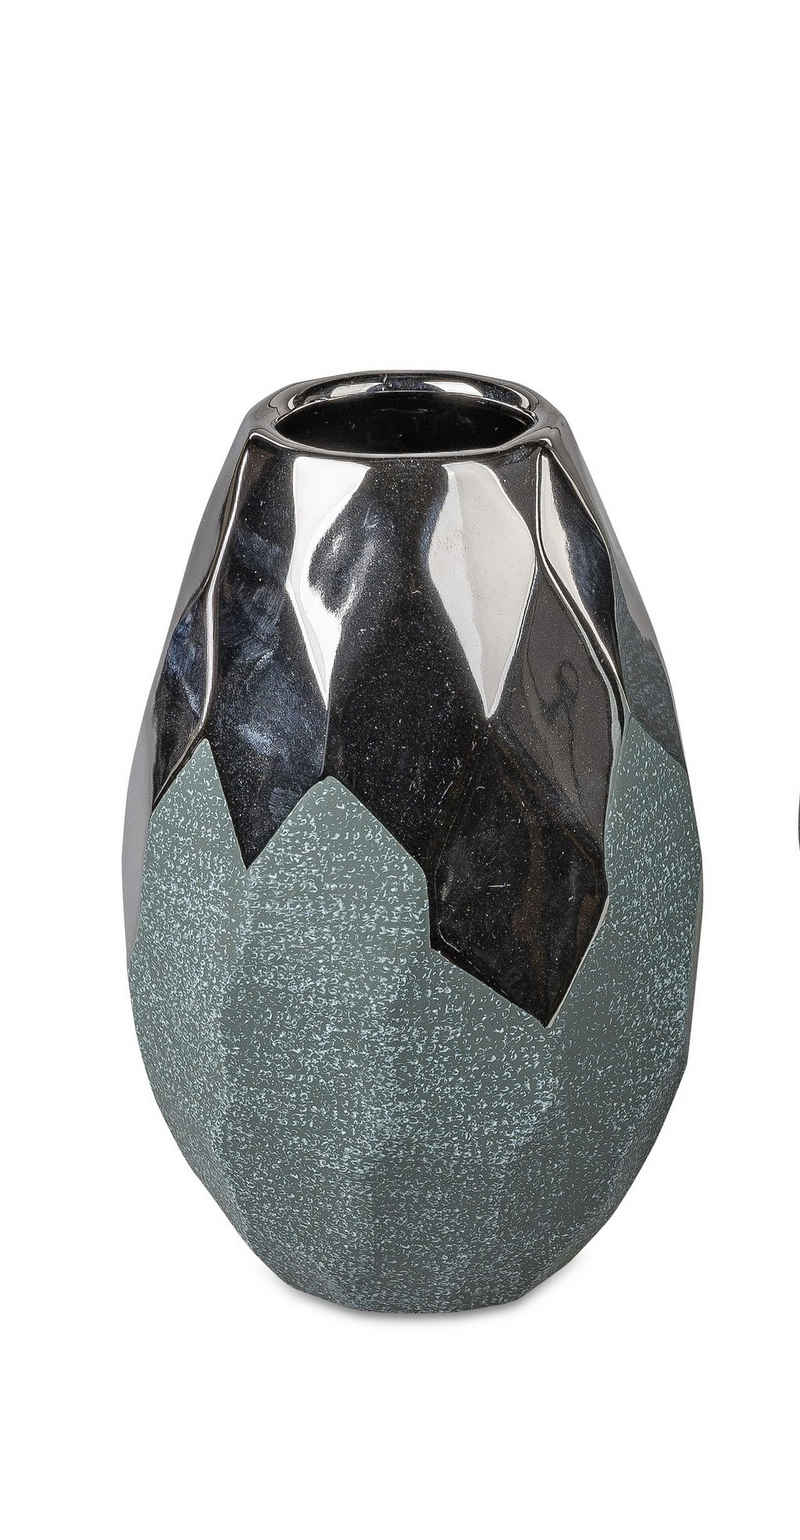 Small-Preis Dekovase Formano Vase Tischvase rund in Petrol / Silber in 2 Formen wählbar, aus Keramik